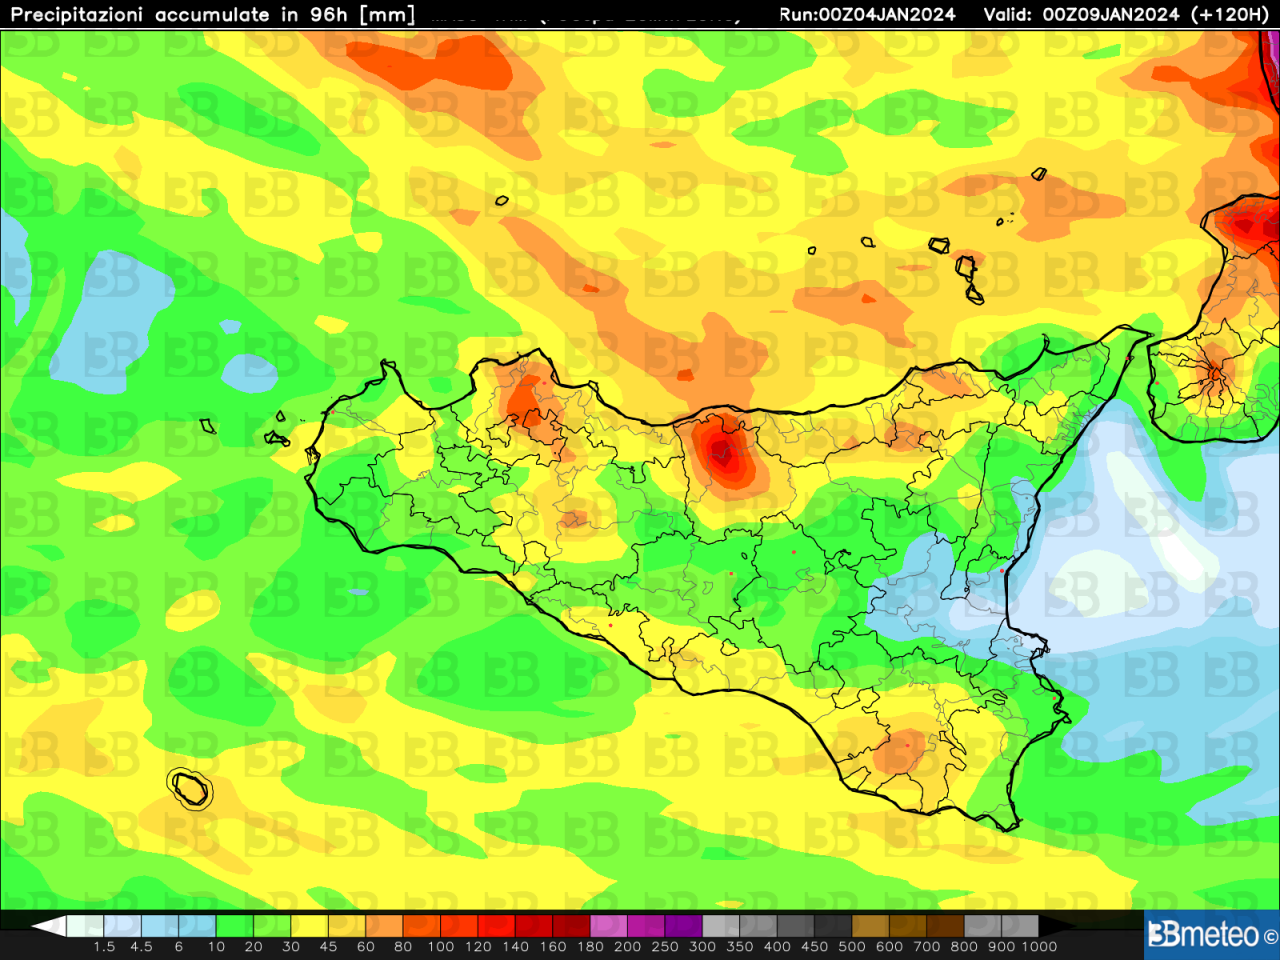 Meteo Sicilia - Le precipitazioni complessive (mm) attese fino all'8 gennaio 2024. Azzurro-verde: deboli-moderate (<20 mm); giallo-arancio: da moderate ad abbondanti